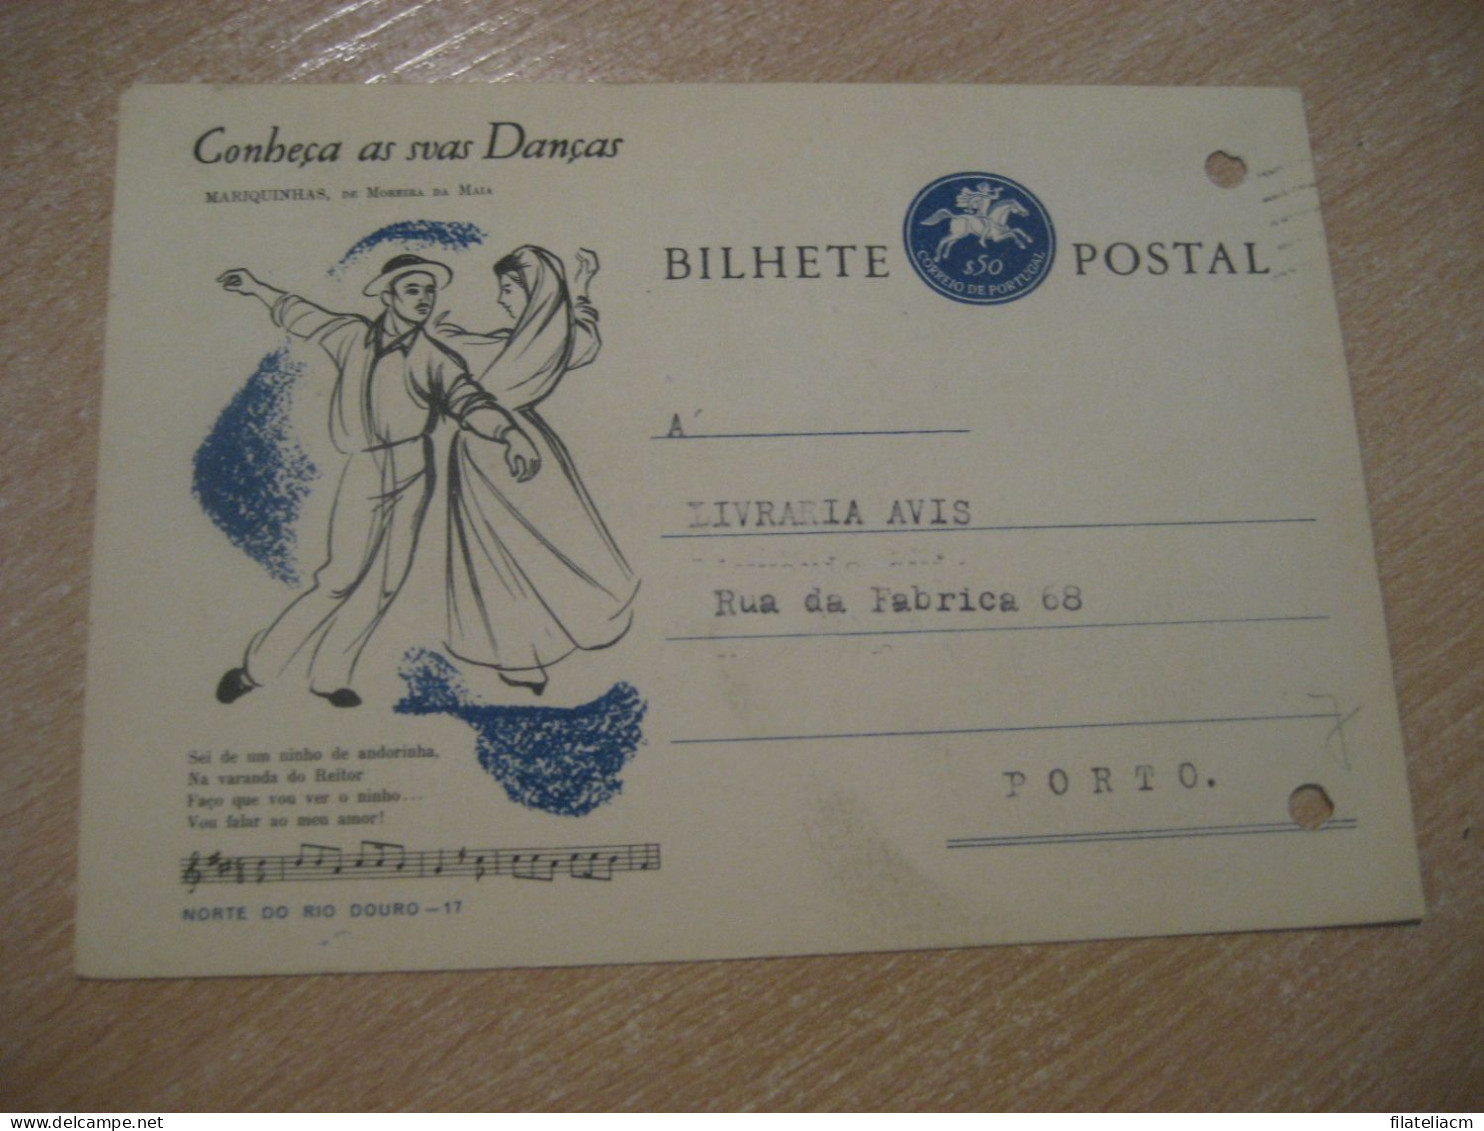 CASTELO BRANCO 1964 To Porto Conheça As Suas Danças Mariquinhas De Moreira Da Maia Bilhete Postal Stationery PORTUGAL - Lettres & Documents